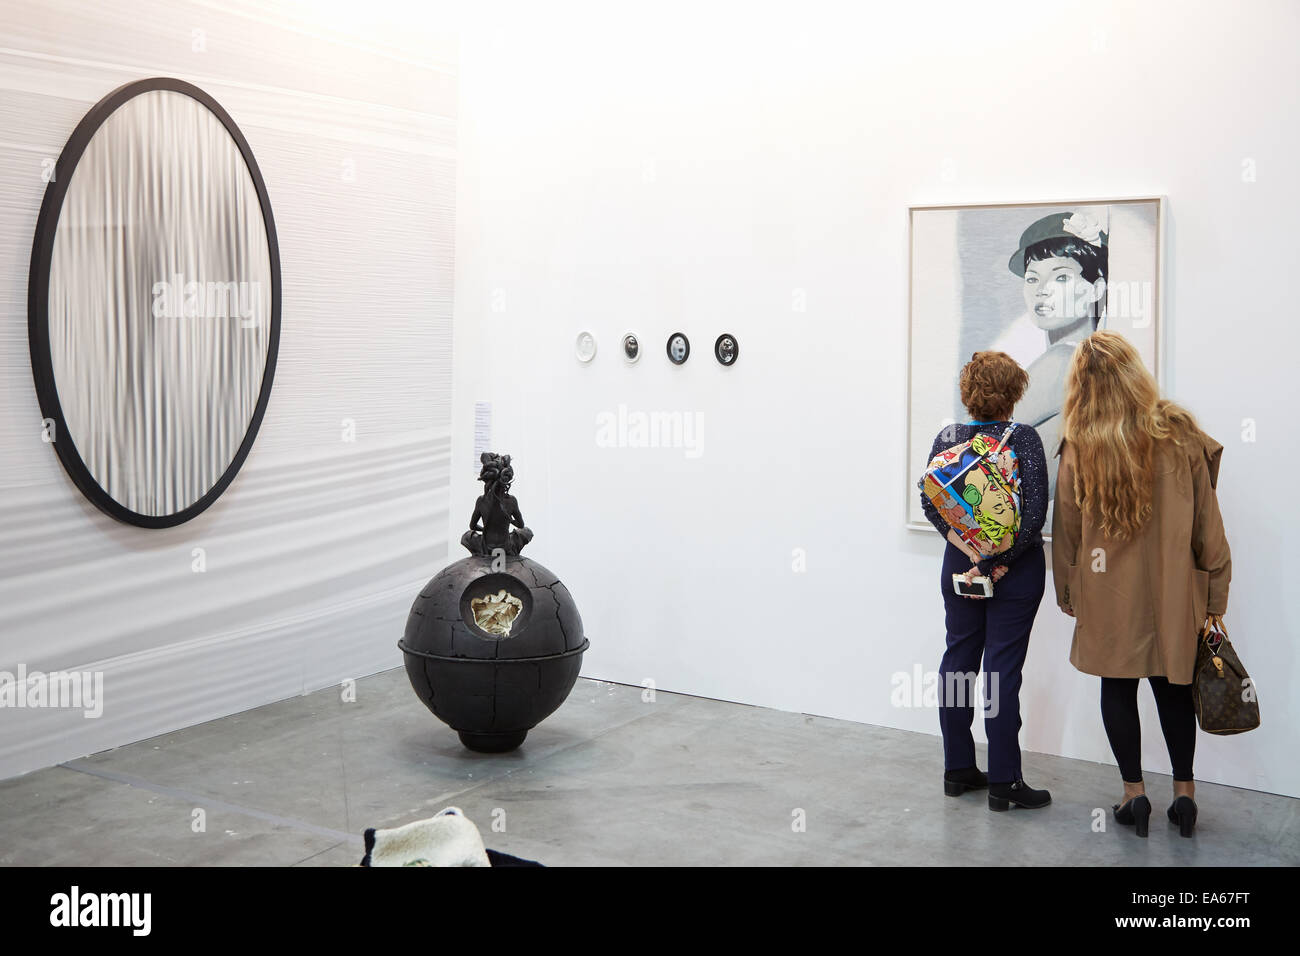 Turin, Italie. Nov 6, 2014. Artissima 2014, personnes et collectionneurs d'art contemporain à ernissage à Turin, Italie. Crédit : A. Astes/Alamy Live News Banque D'Images